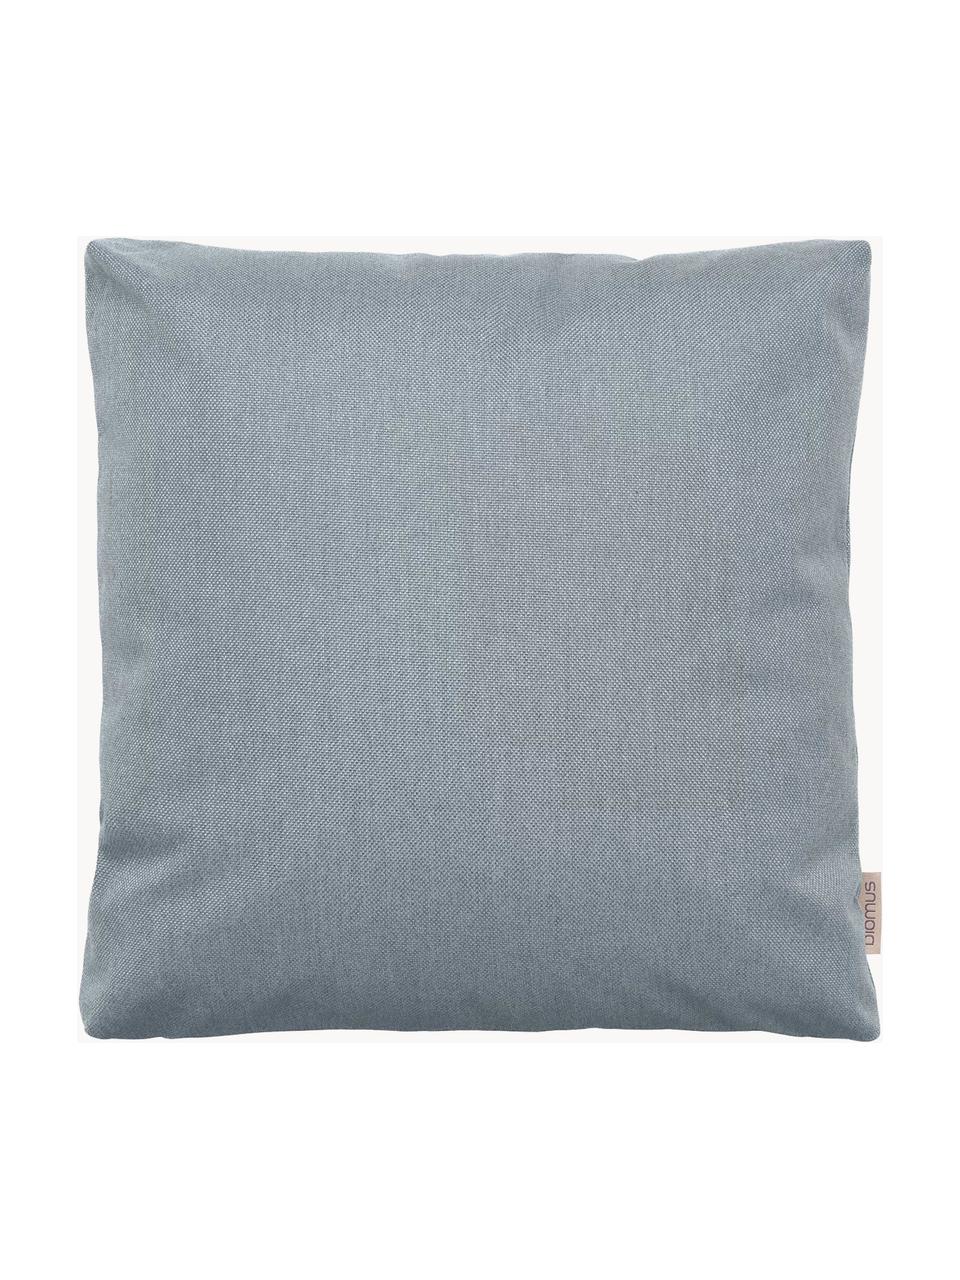 Cuscino da esterno Stay, Rivestimento: 100% poliestere, Grigio-blu, Larg. 45 x Lung. 45 cm